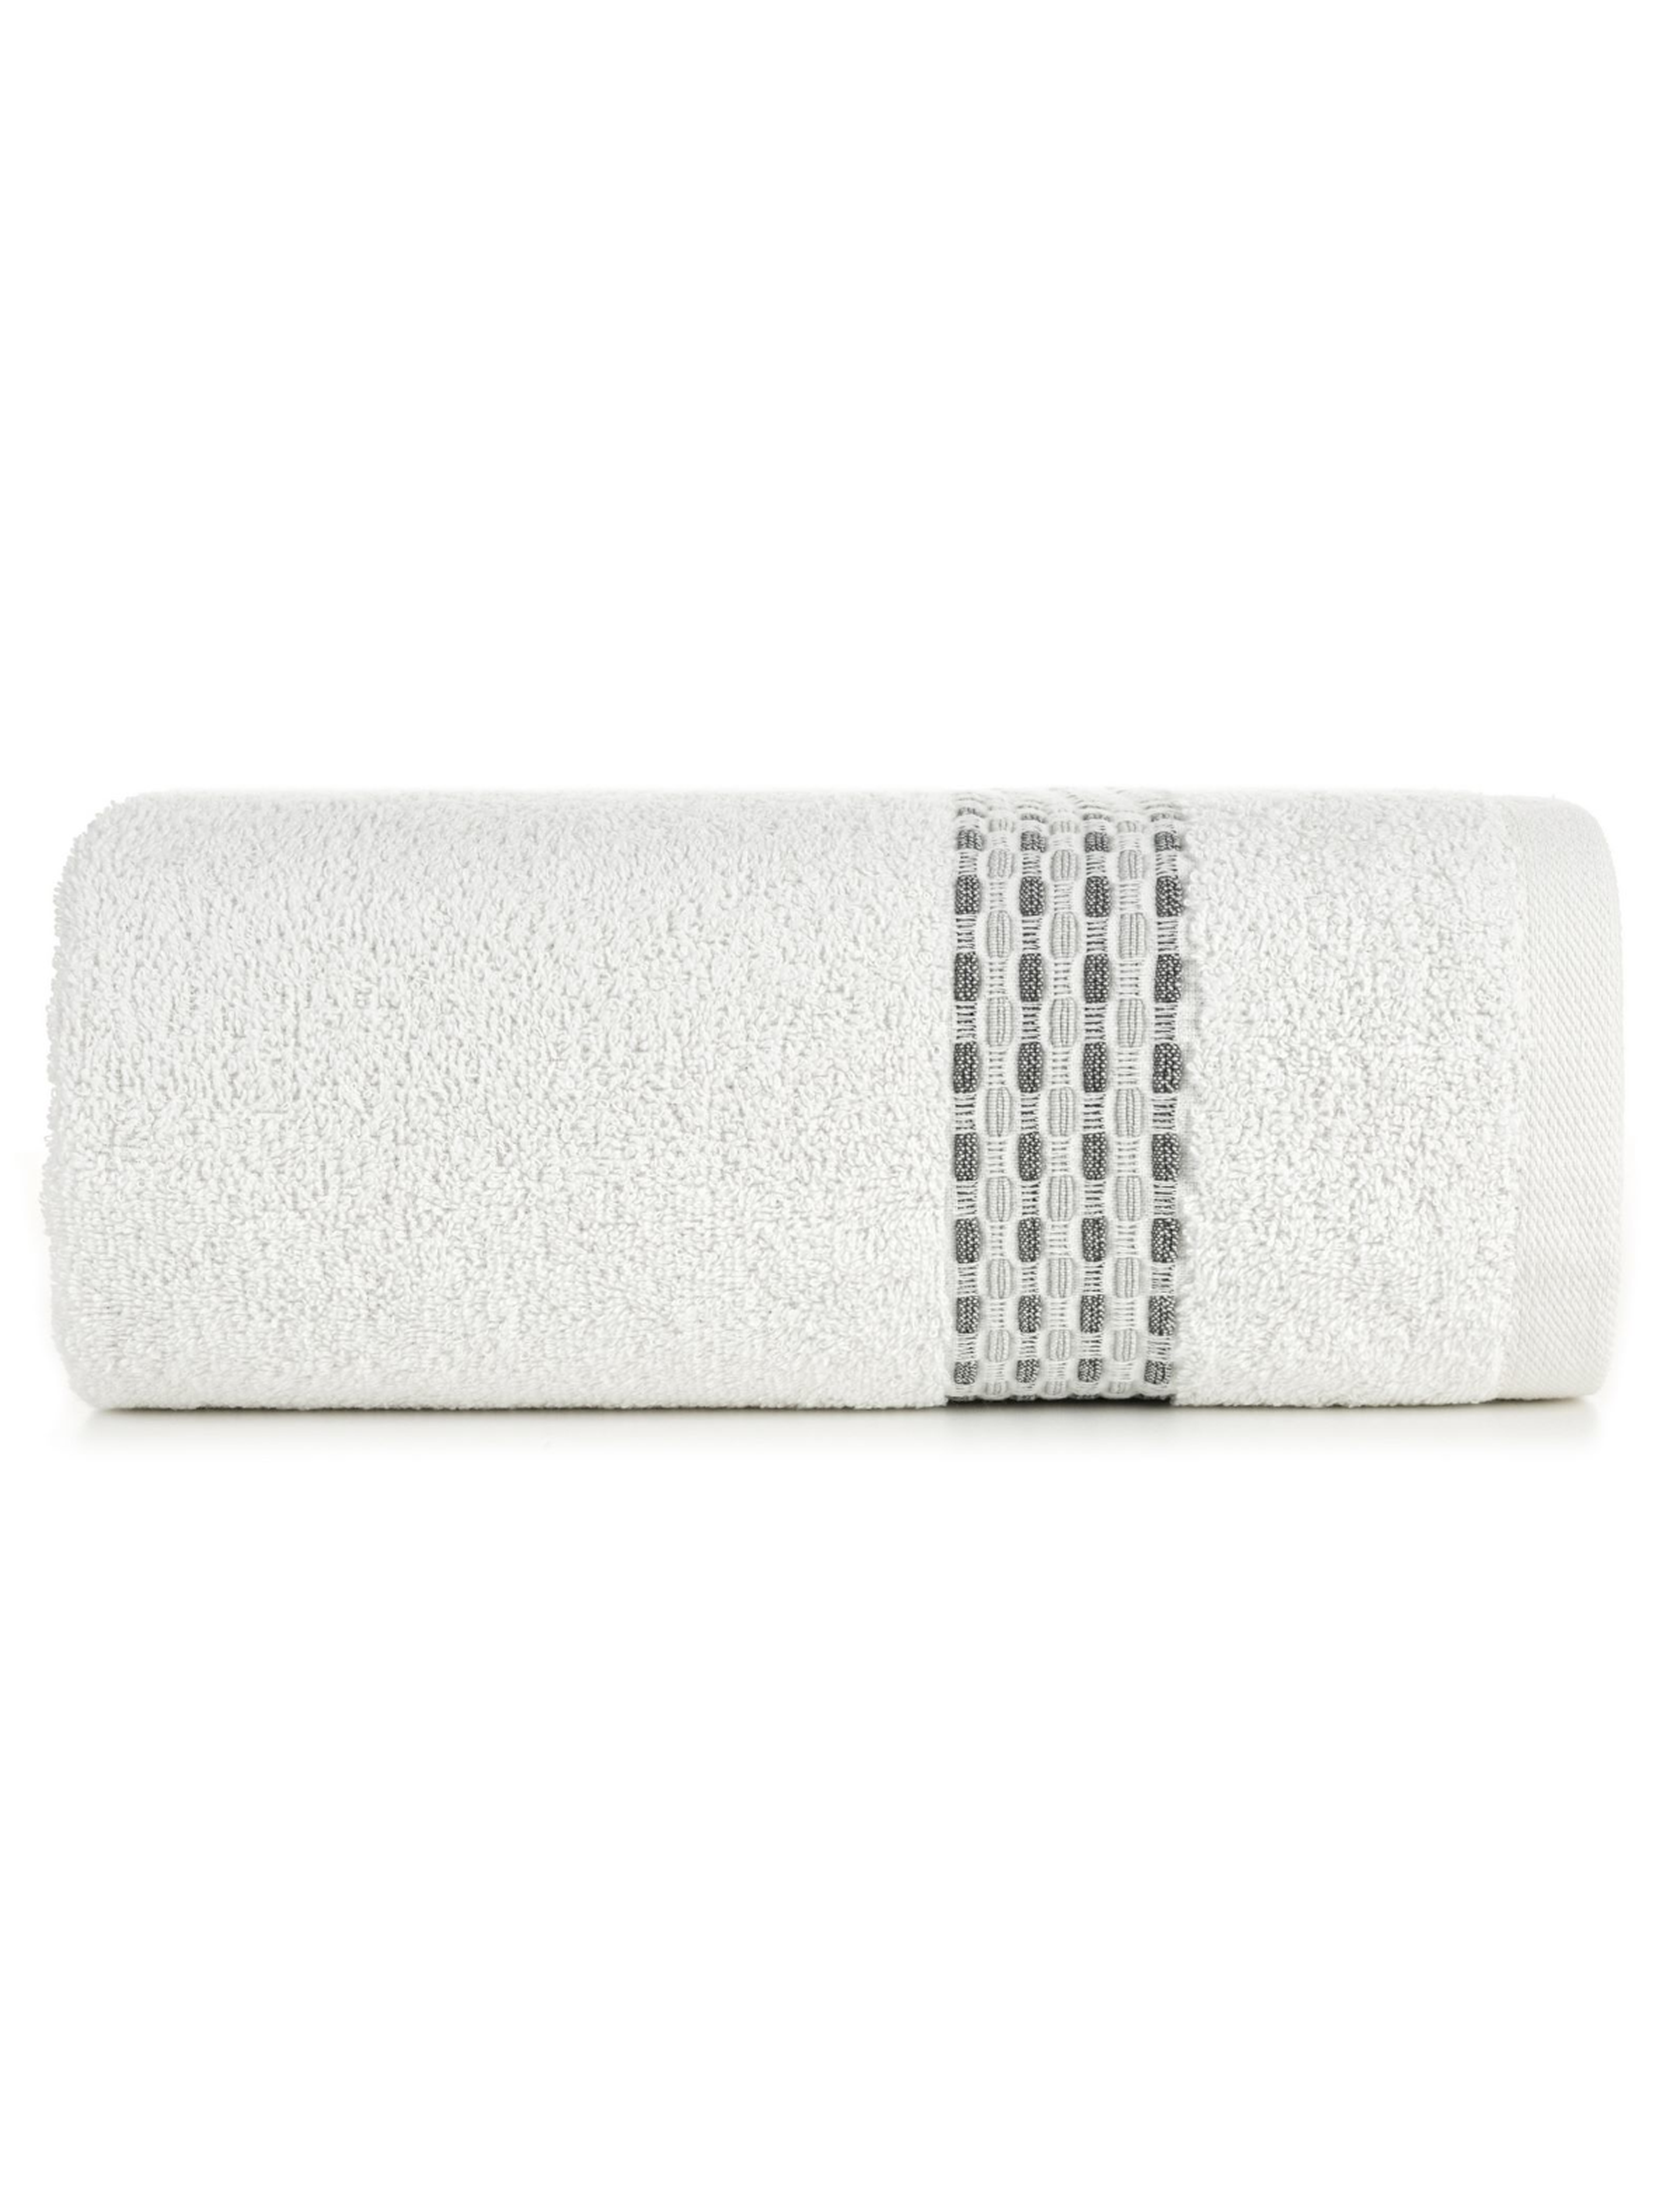 Biały ręcznik ze zdobieniami 70x140 cm